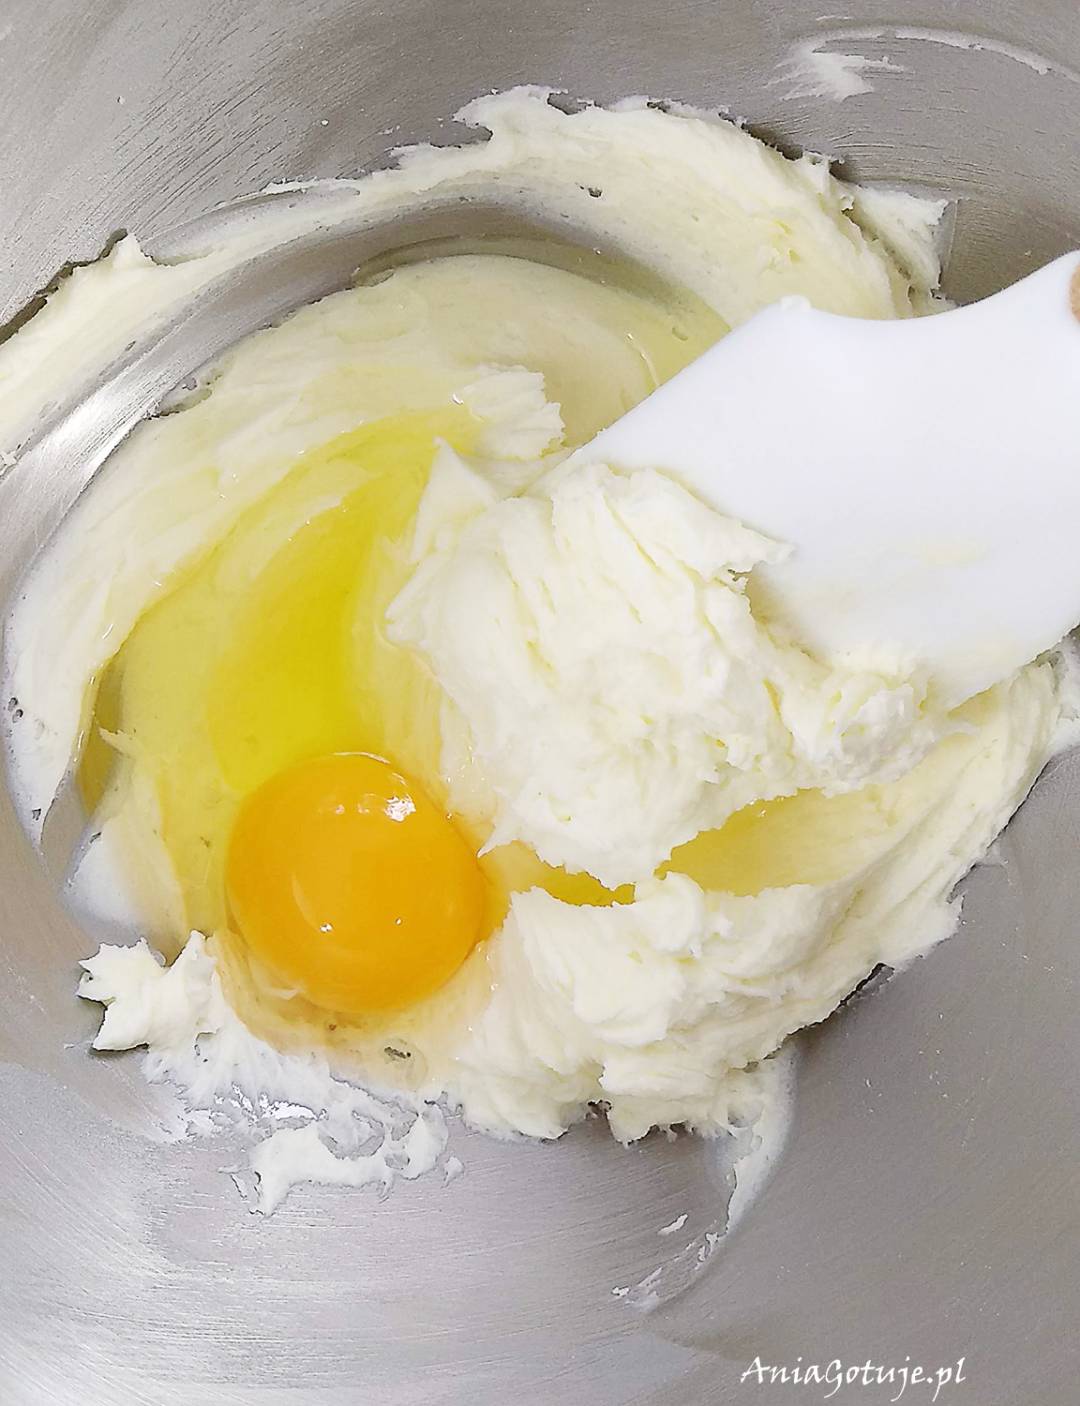 Ubij masło + dodaj jajka